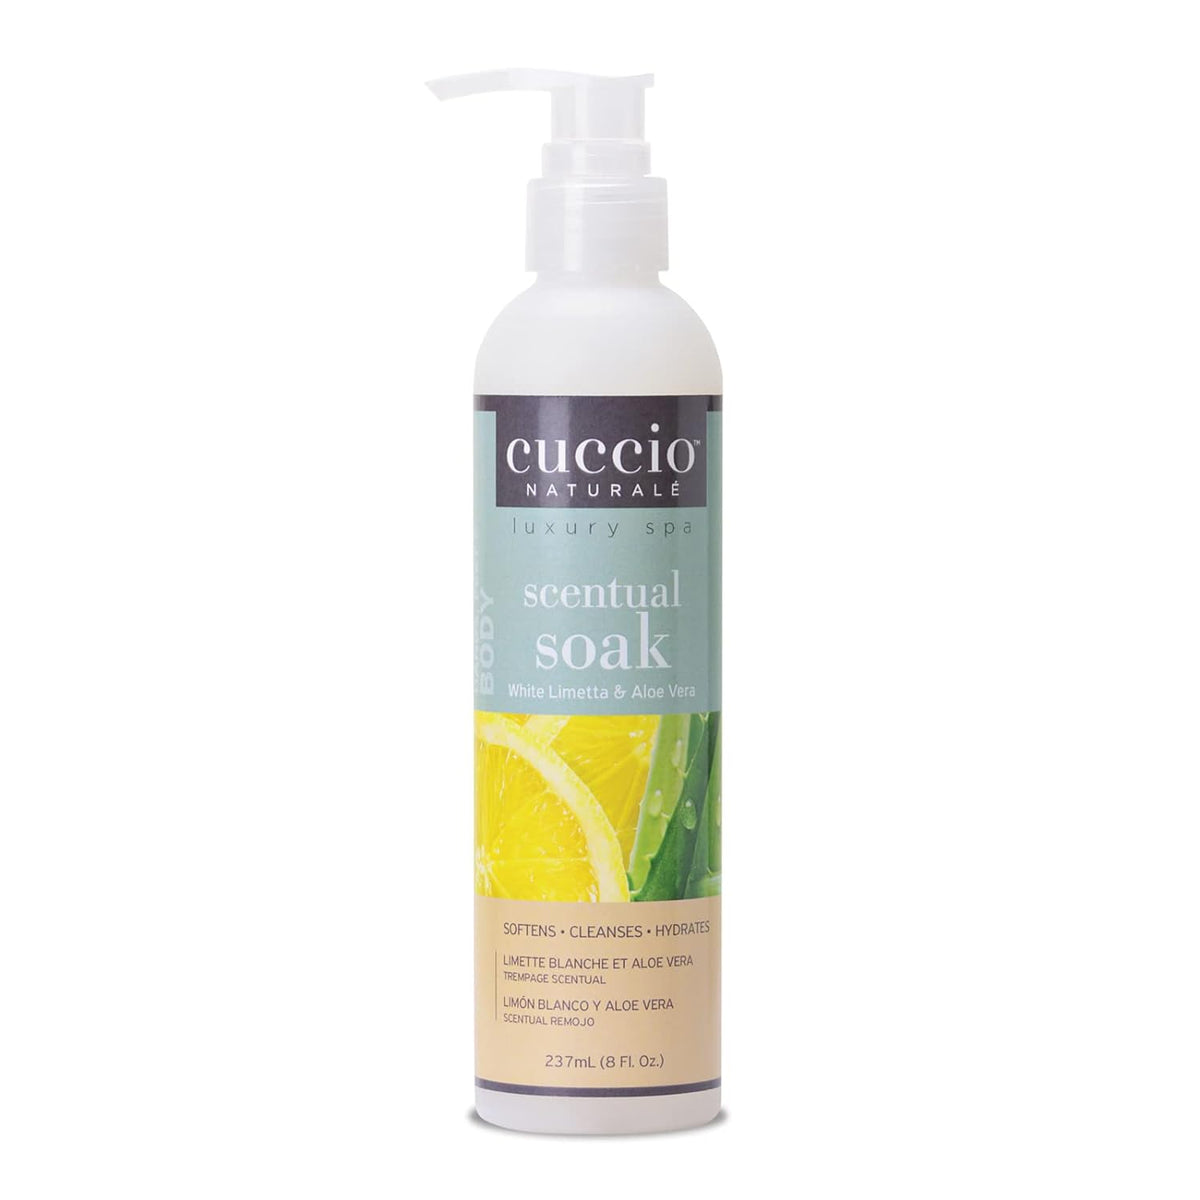 Cuccio - Scentual Soak - White Limetta and Aloe Vera - for Women - Cleanser - 8 oz